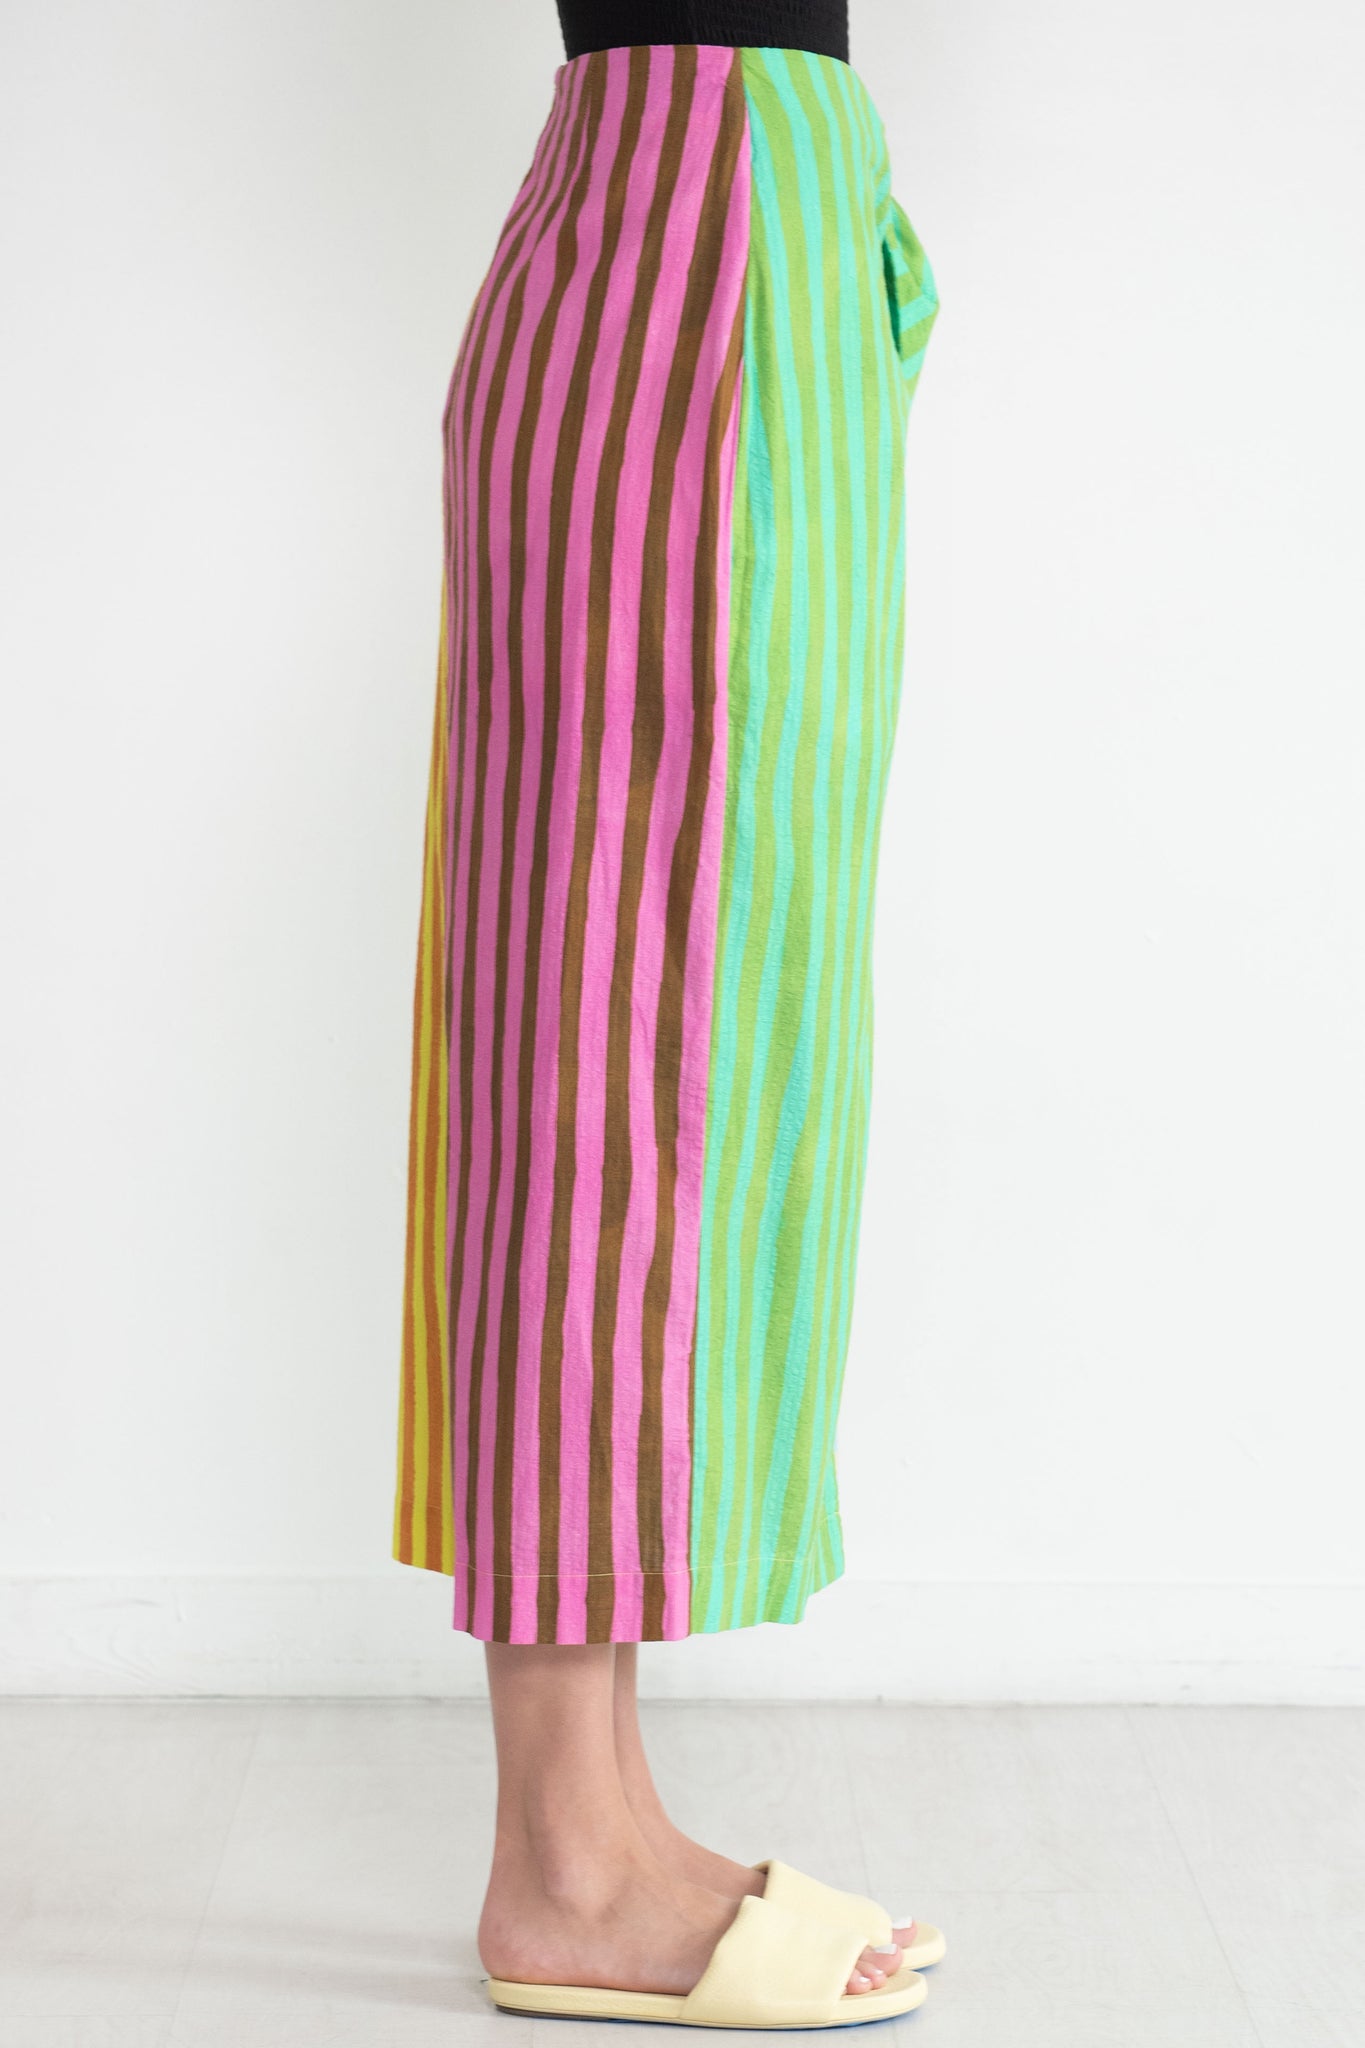 ALÉMAIS - Bobbie Tie Front Skirt, Multi